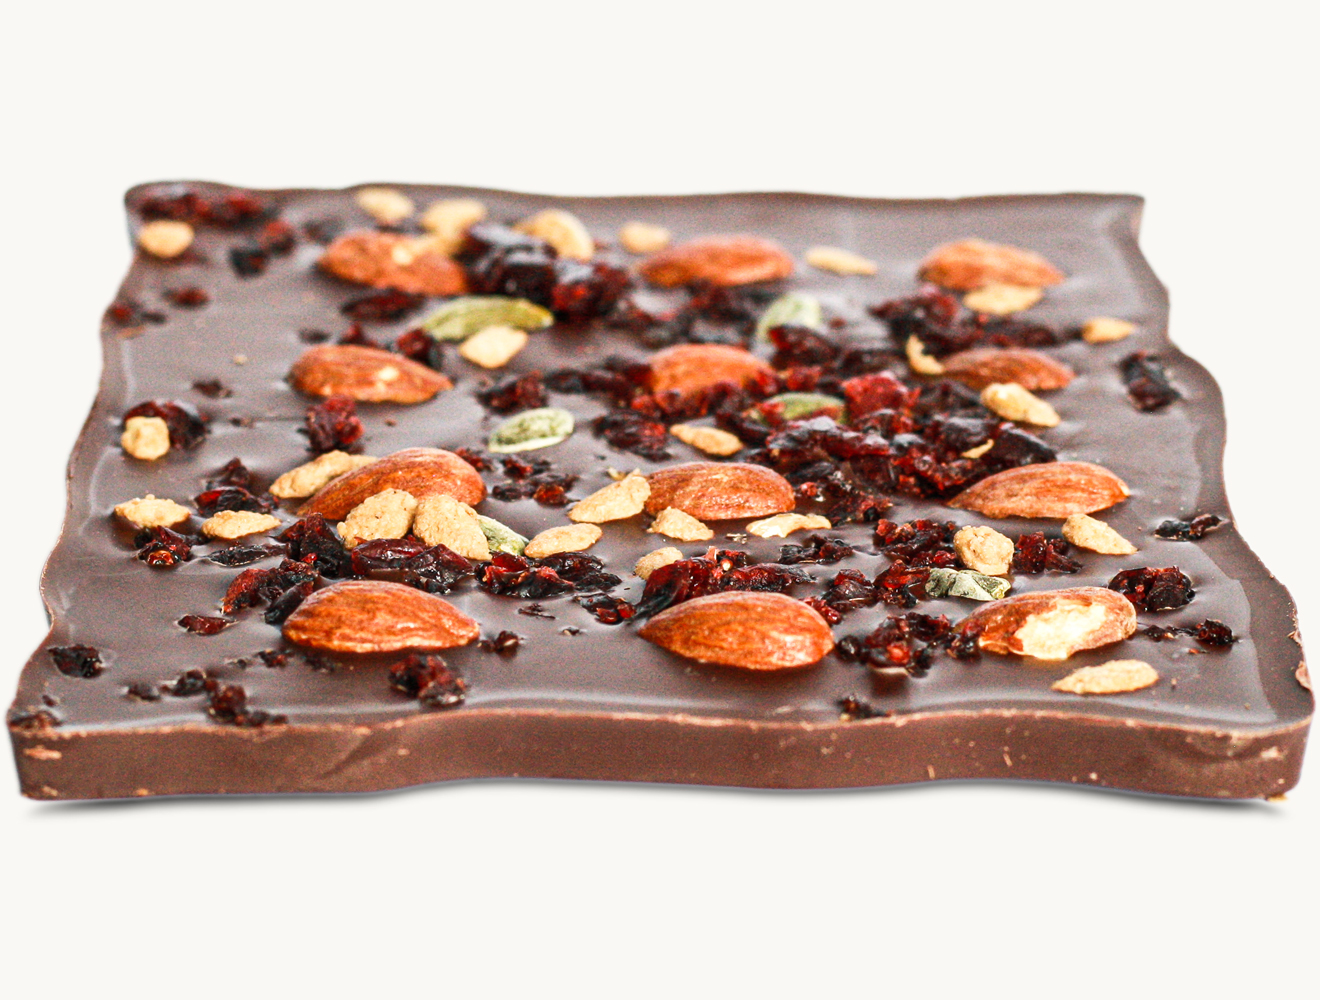 Tafelschokolade Edelcacao Nüsse und Früchte Zartbitter